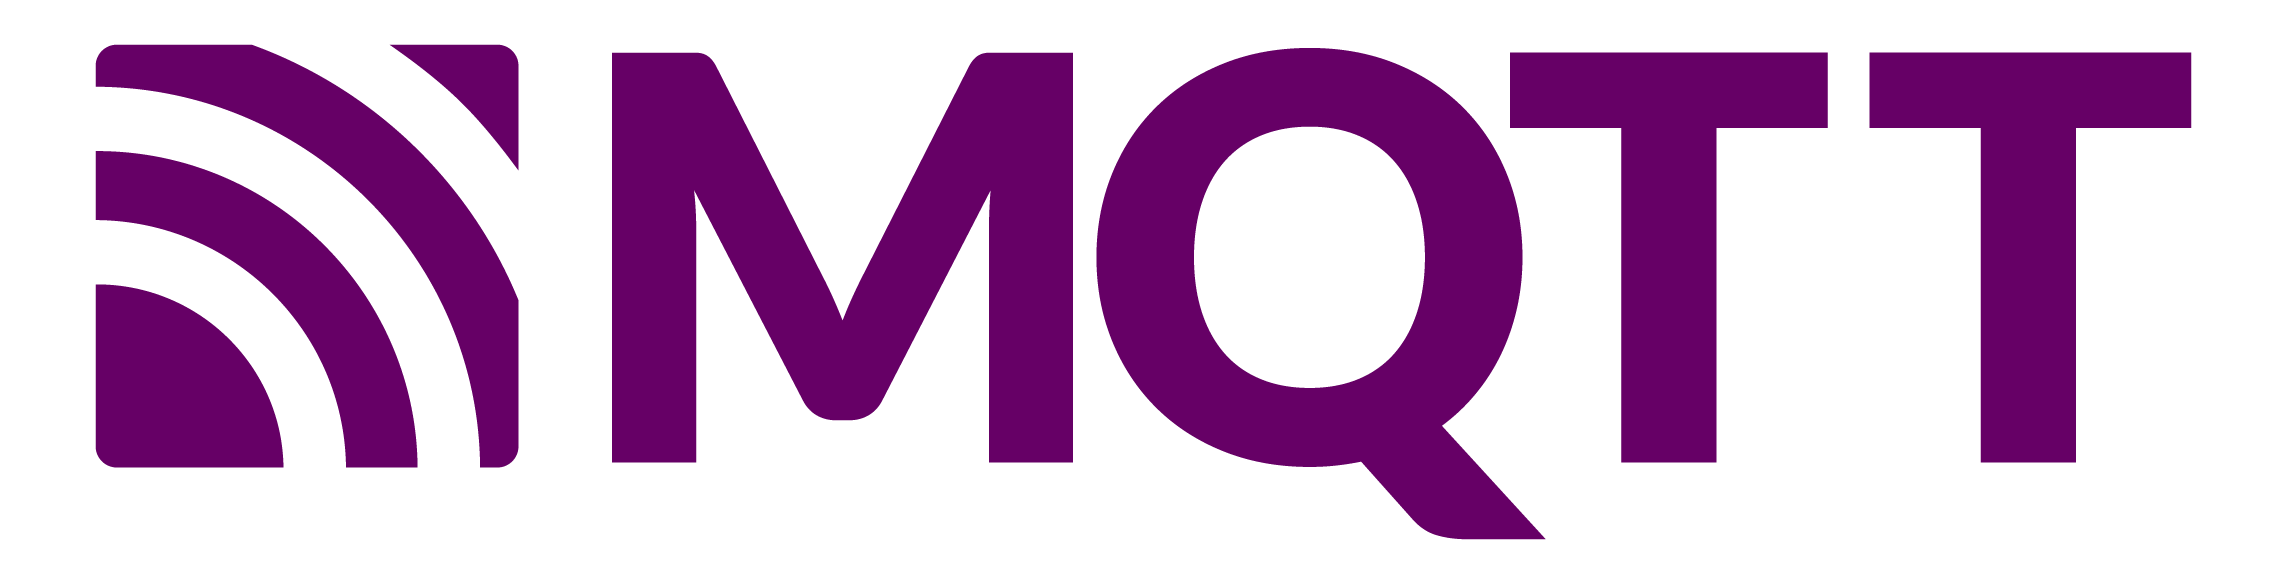 mqtt-logo